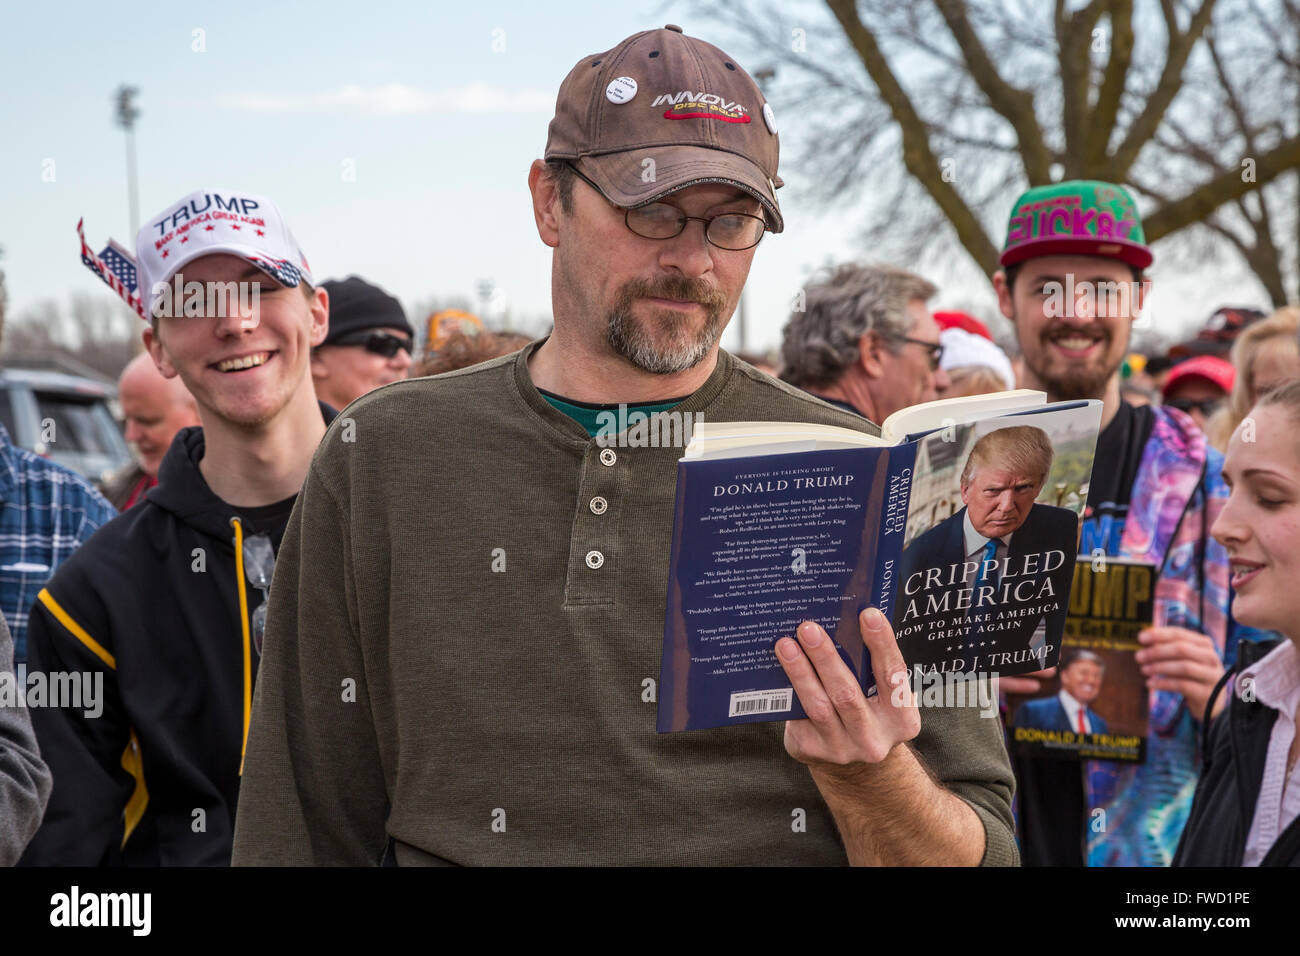 West Allis, Wisconsin USA - 3 avril 2016 - Un homme lit un livre de Donald Trump dans l'attente d'une longue ligne d'admission à un rassemblement électoral Trump. Crédit : Jim West/Alamy Live News Banque D'Images